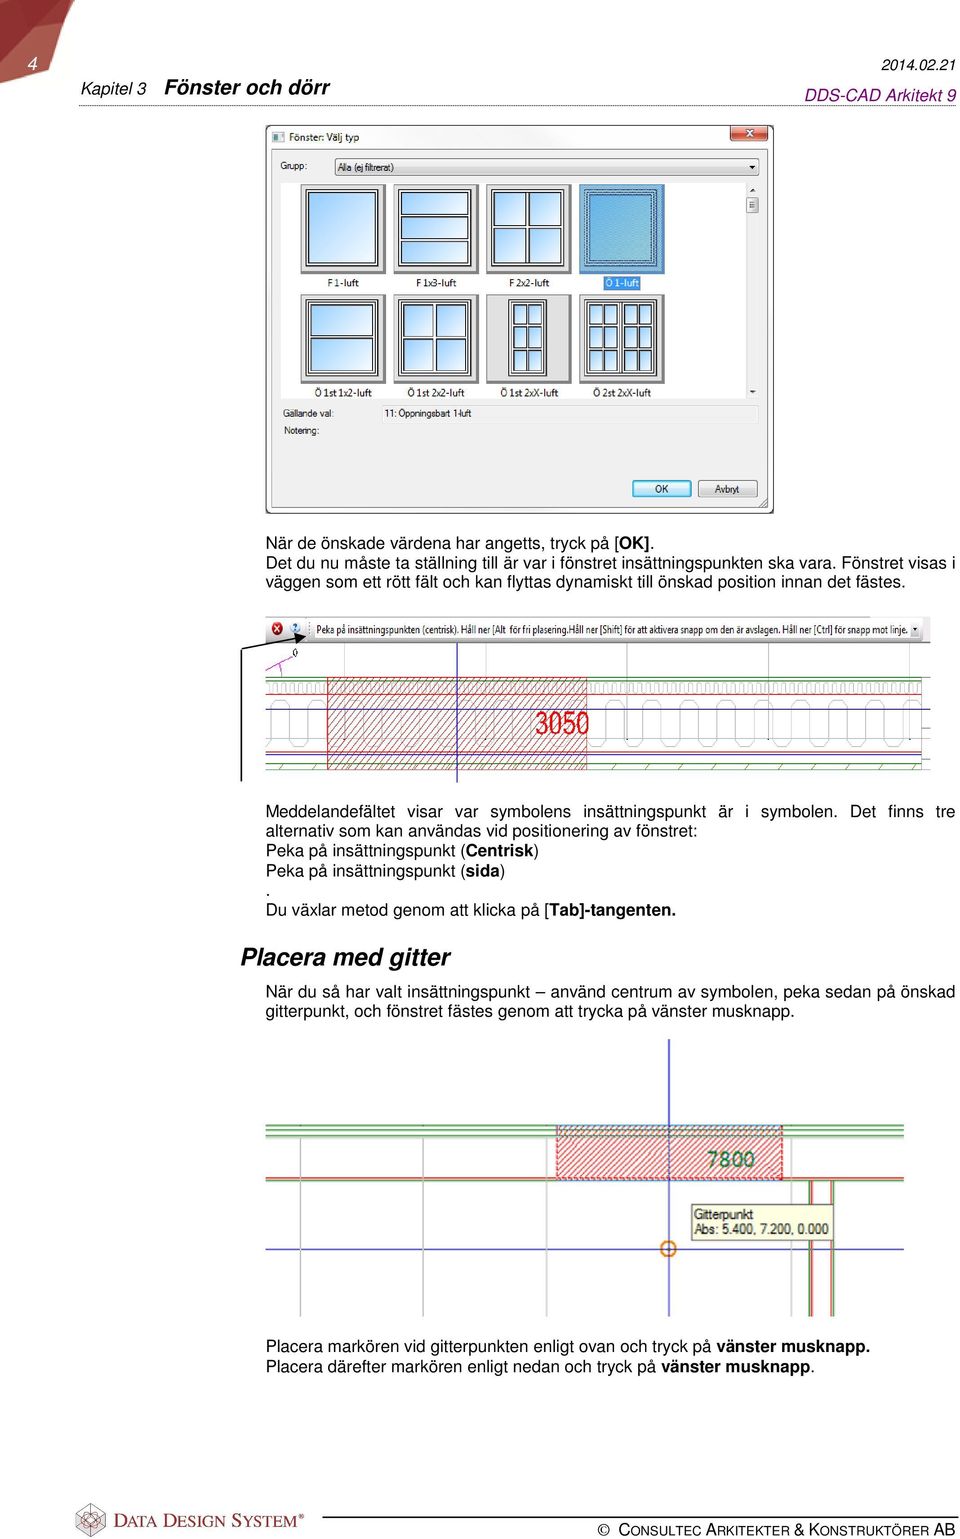 Det finns tre alternativ som kan användas vid positionering av fönstret: Peka på insättningspunkt (Centrisk) Peka på insättningspunkt (sida). Du växlar metod genom att klicka på [Tab]-tangenten.